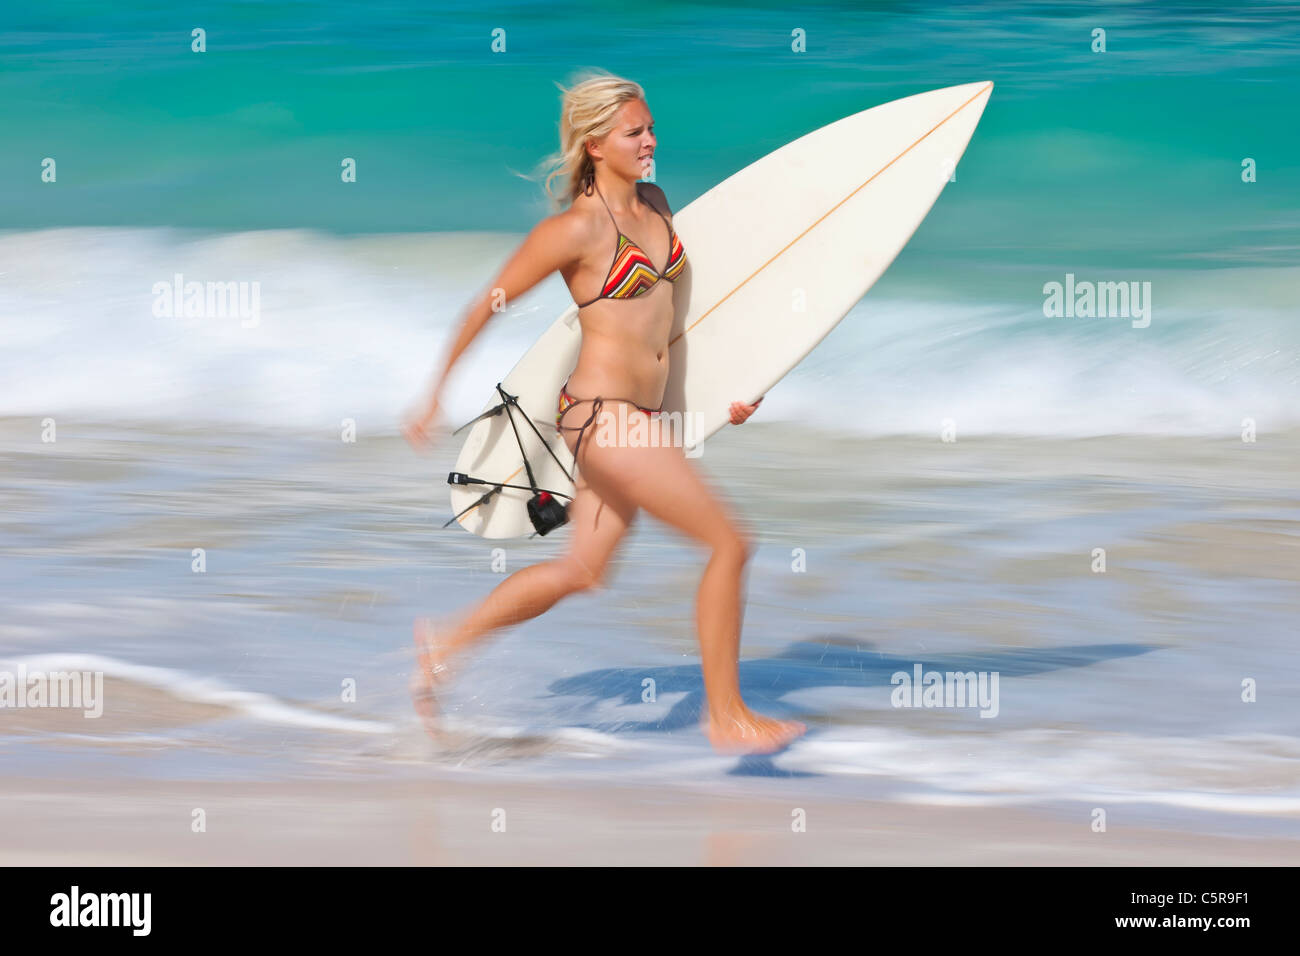 Un jeune surfeur blond court le long du bord de l'océan avec planche de surf. Banque D'Images